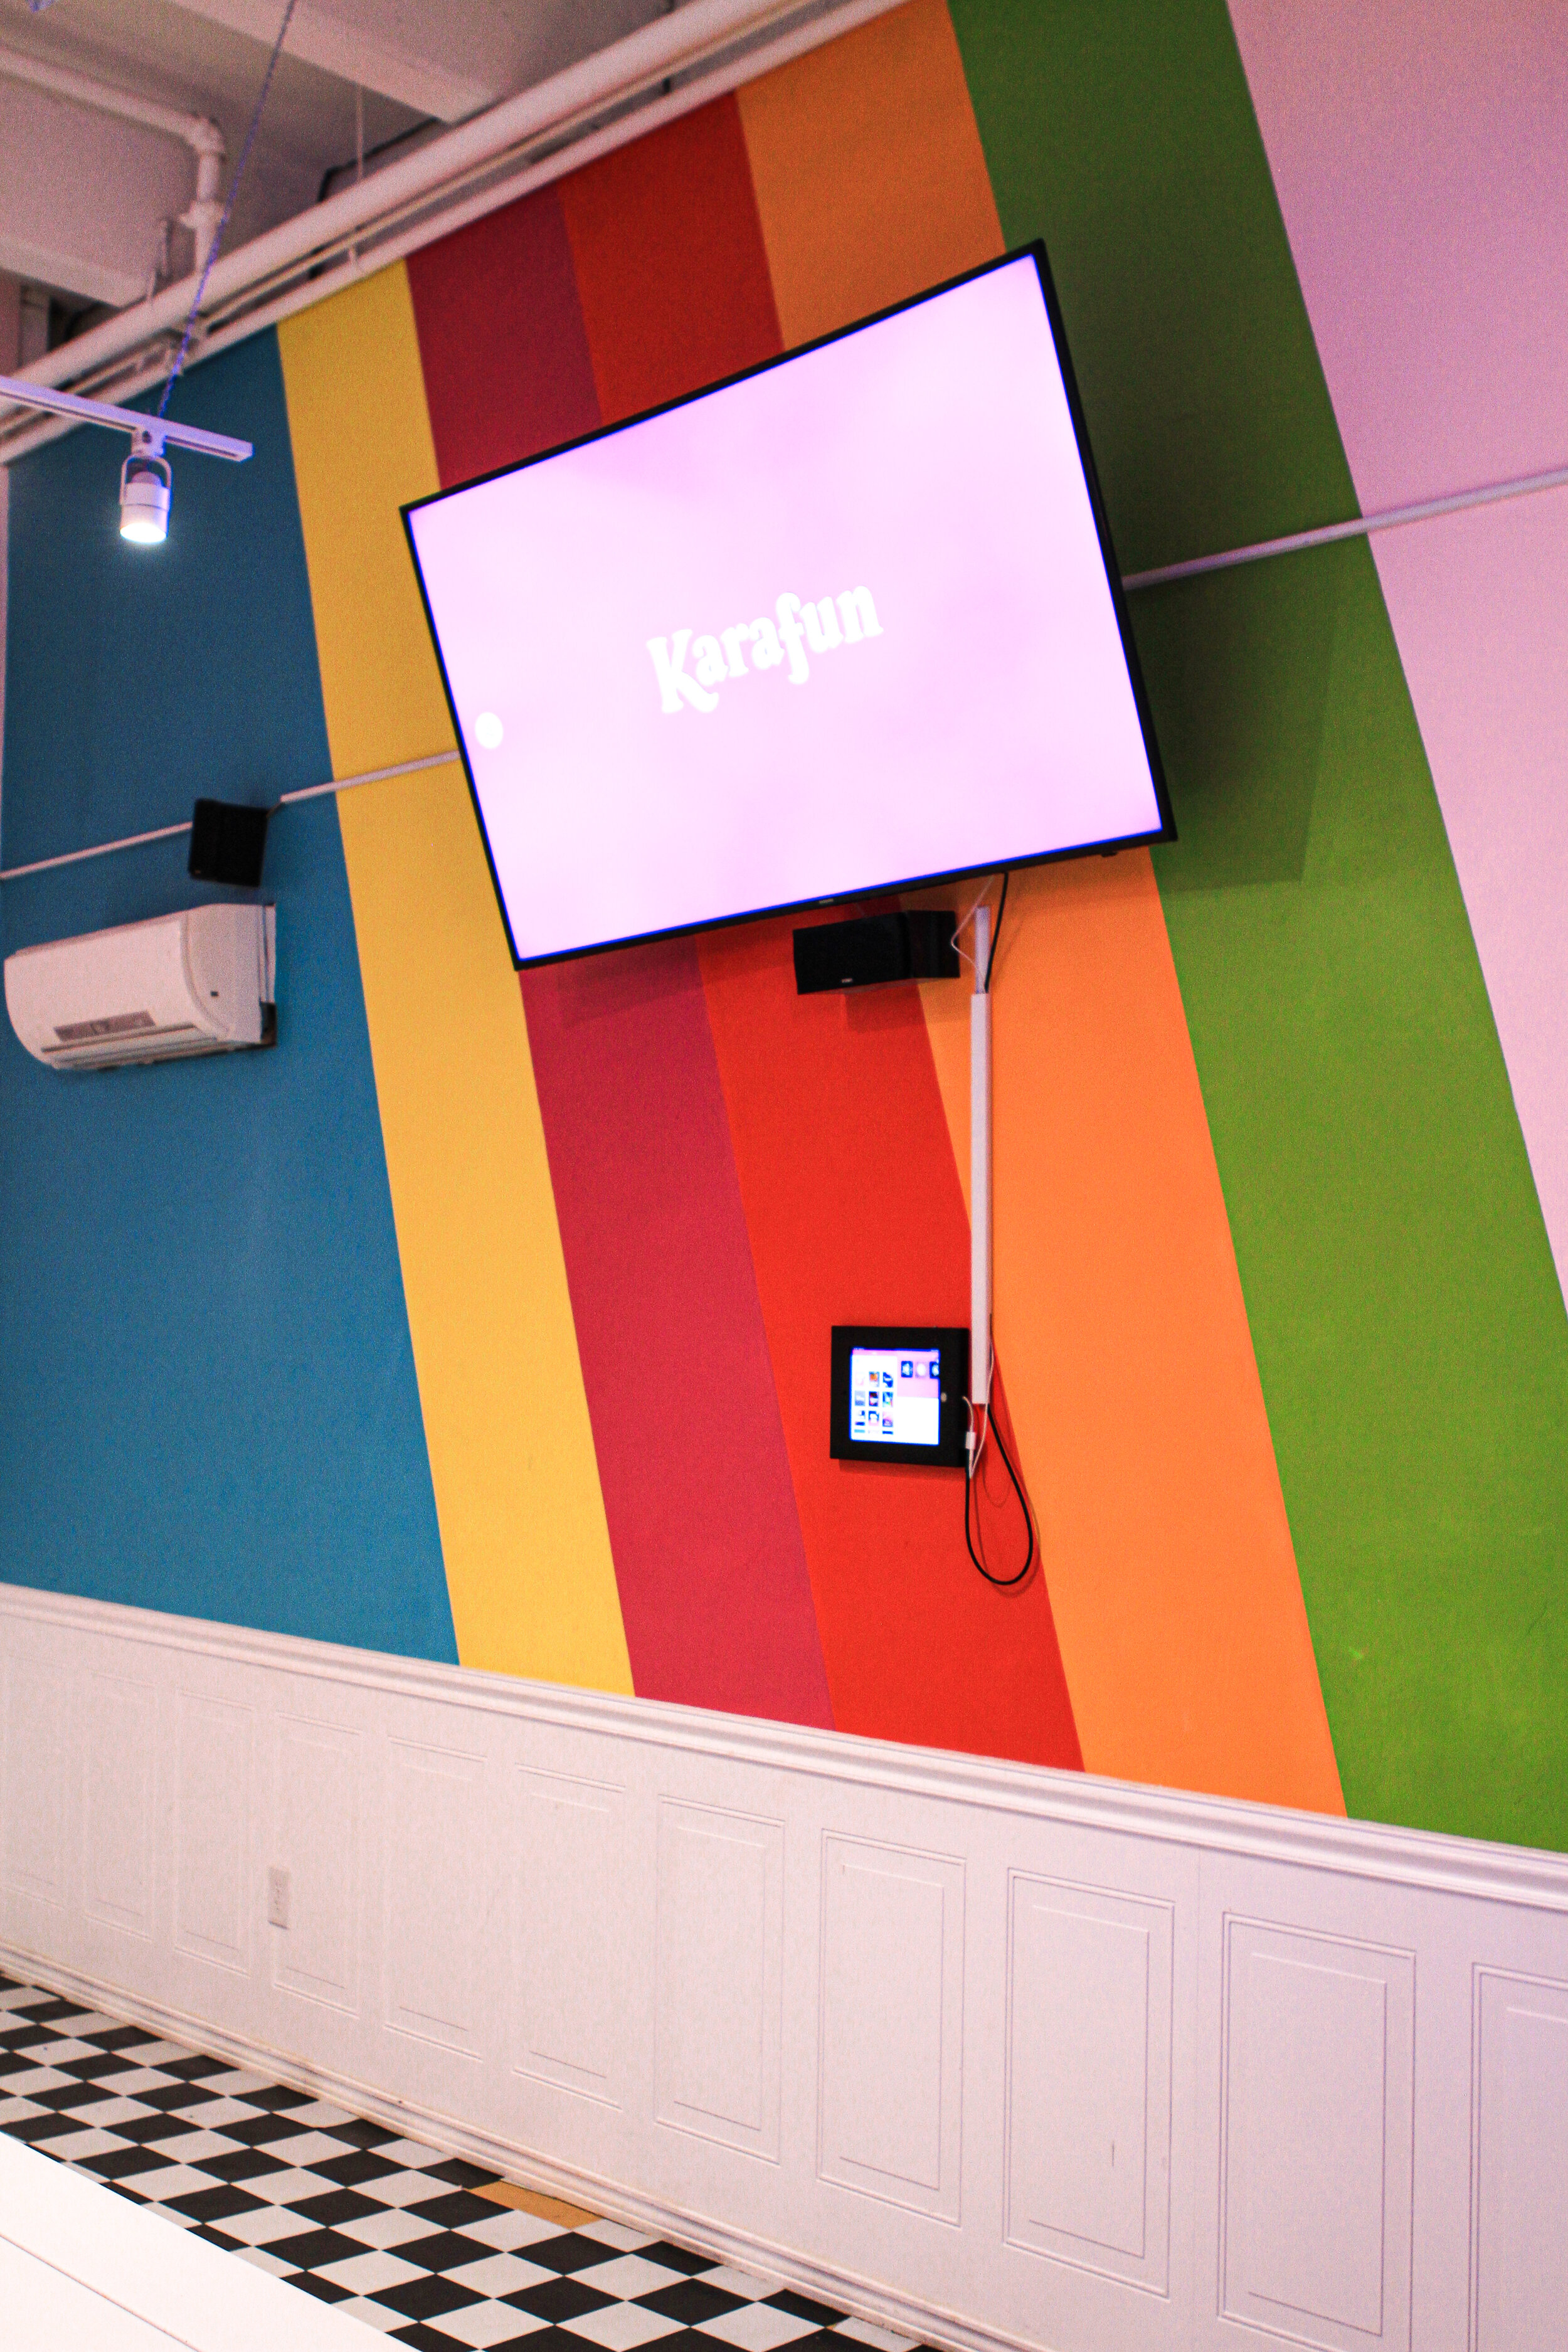  tv displaying karafun karaoke  